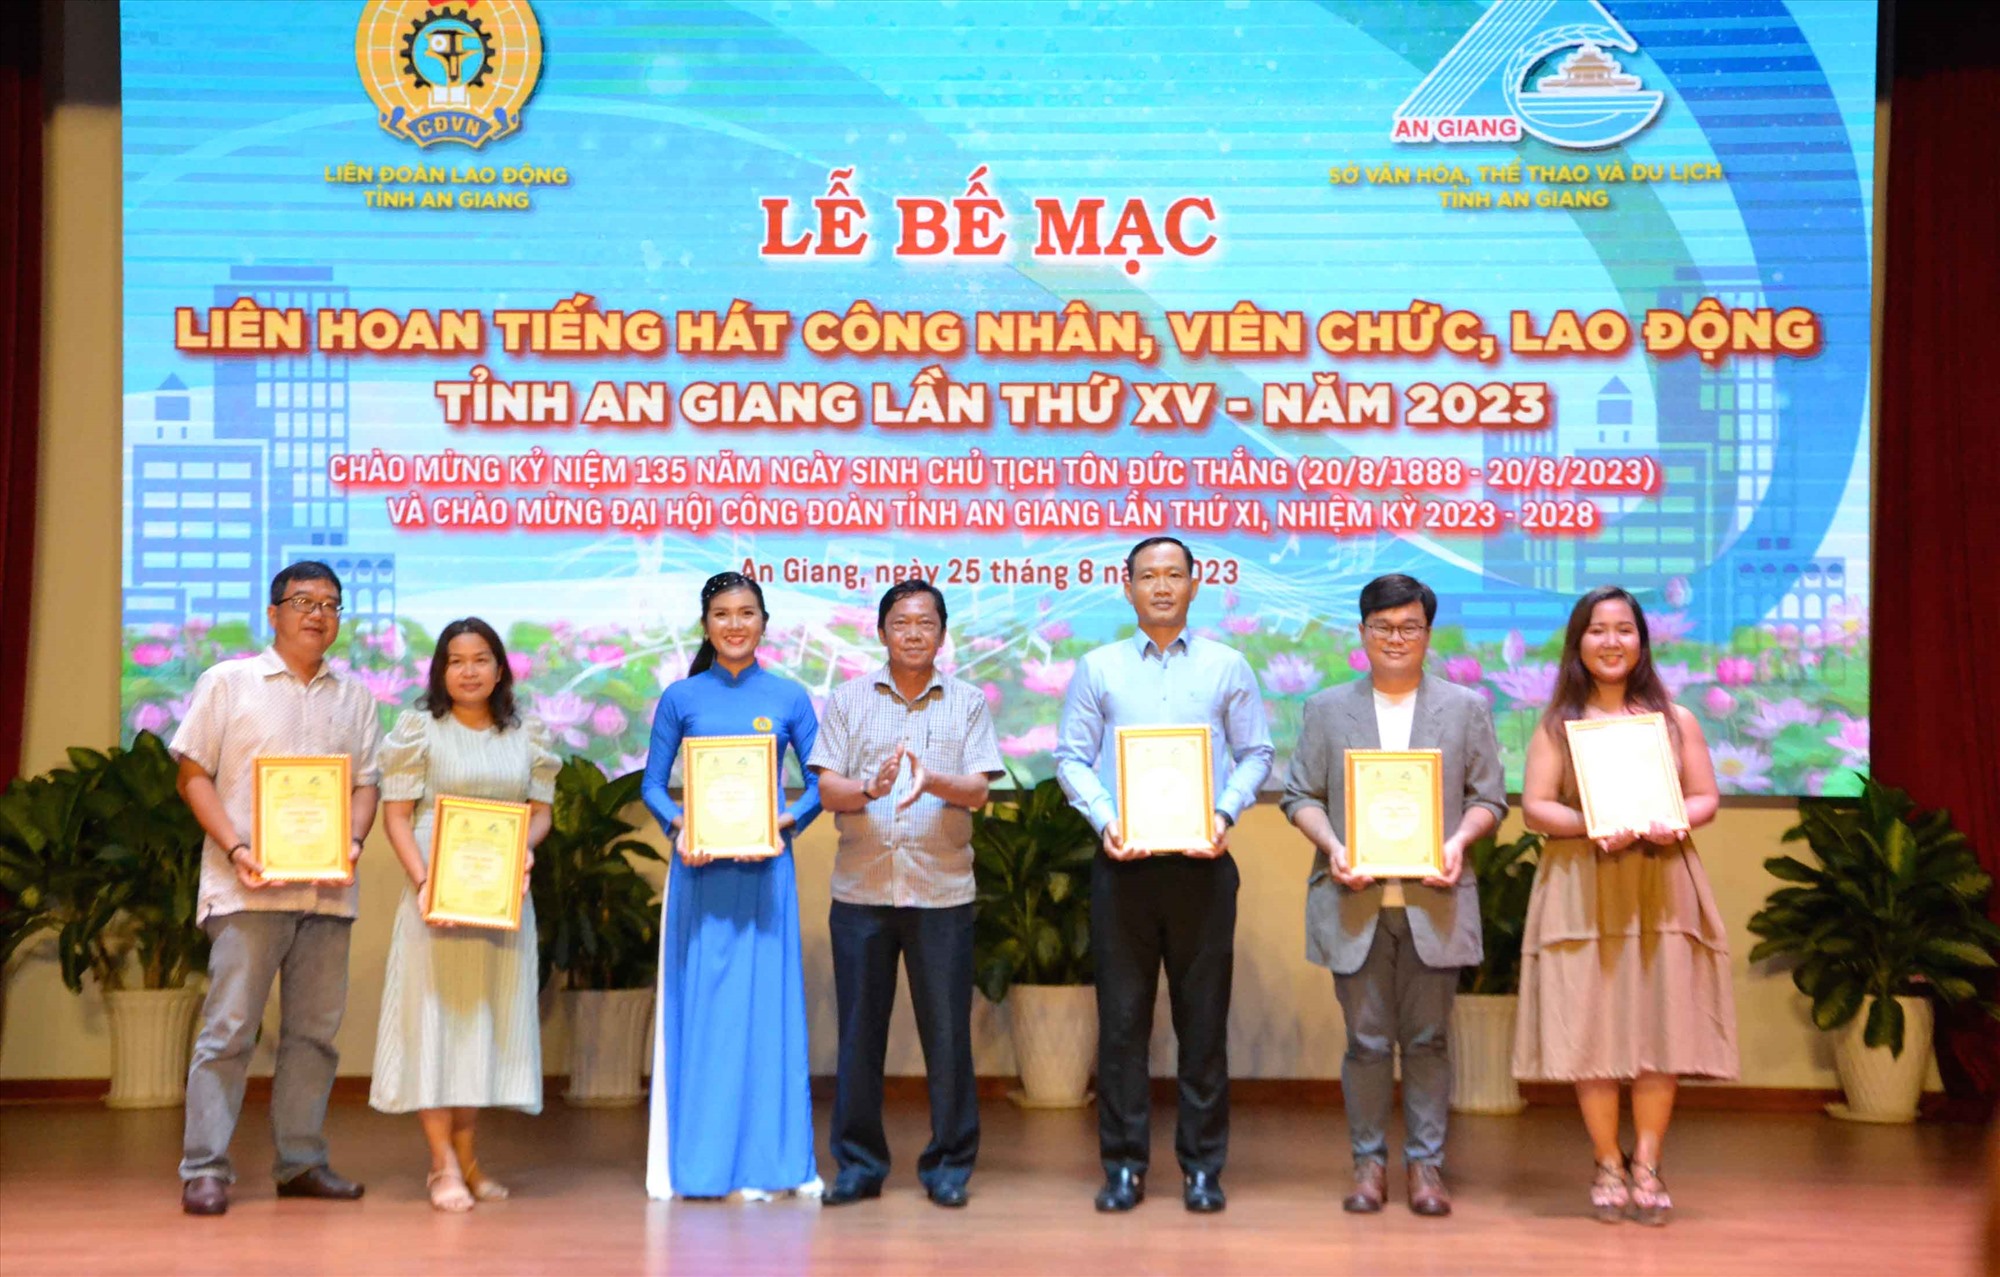 Ông Nguyễn Khánh Hiệp, Tỉnh ủy viên, Giám đốc Sở VHTTDL tỉnh An Giang trao thưởng cho các đợn vị, cá nhân đạt giải cao nhất tại Liên hoan. Ảnh: Lâm Điền